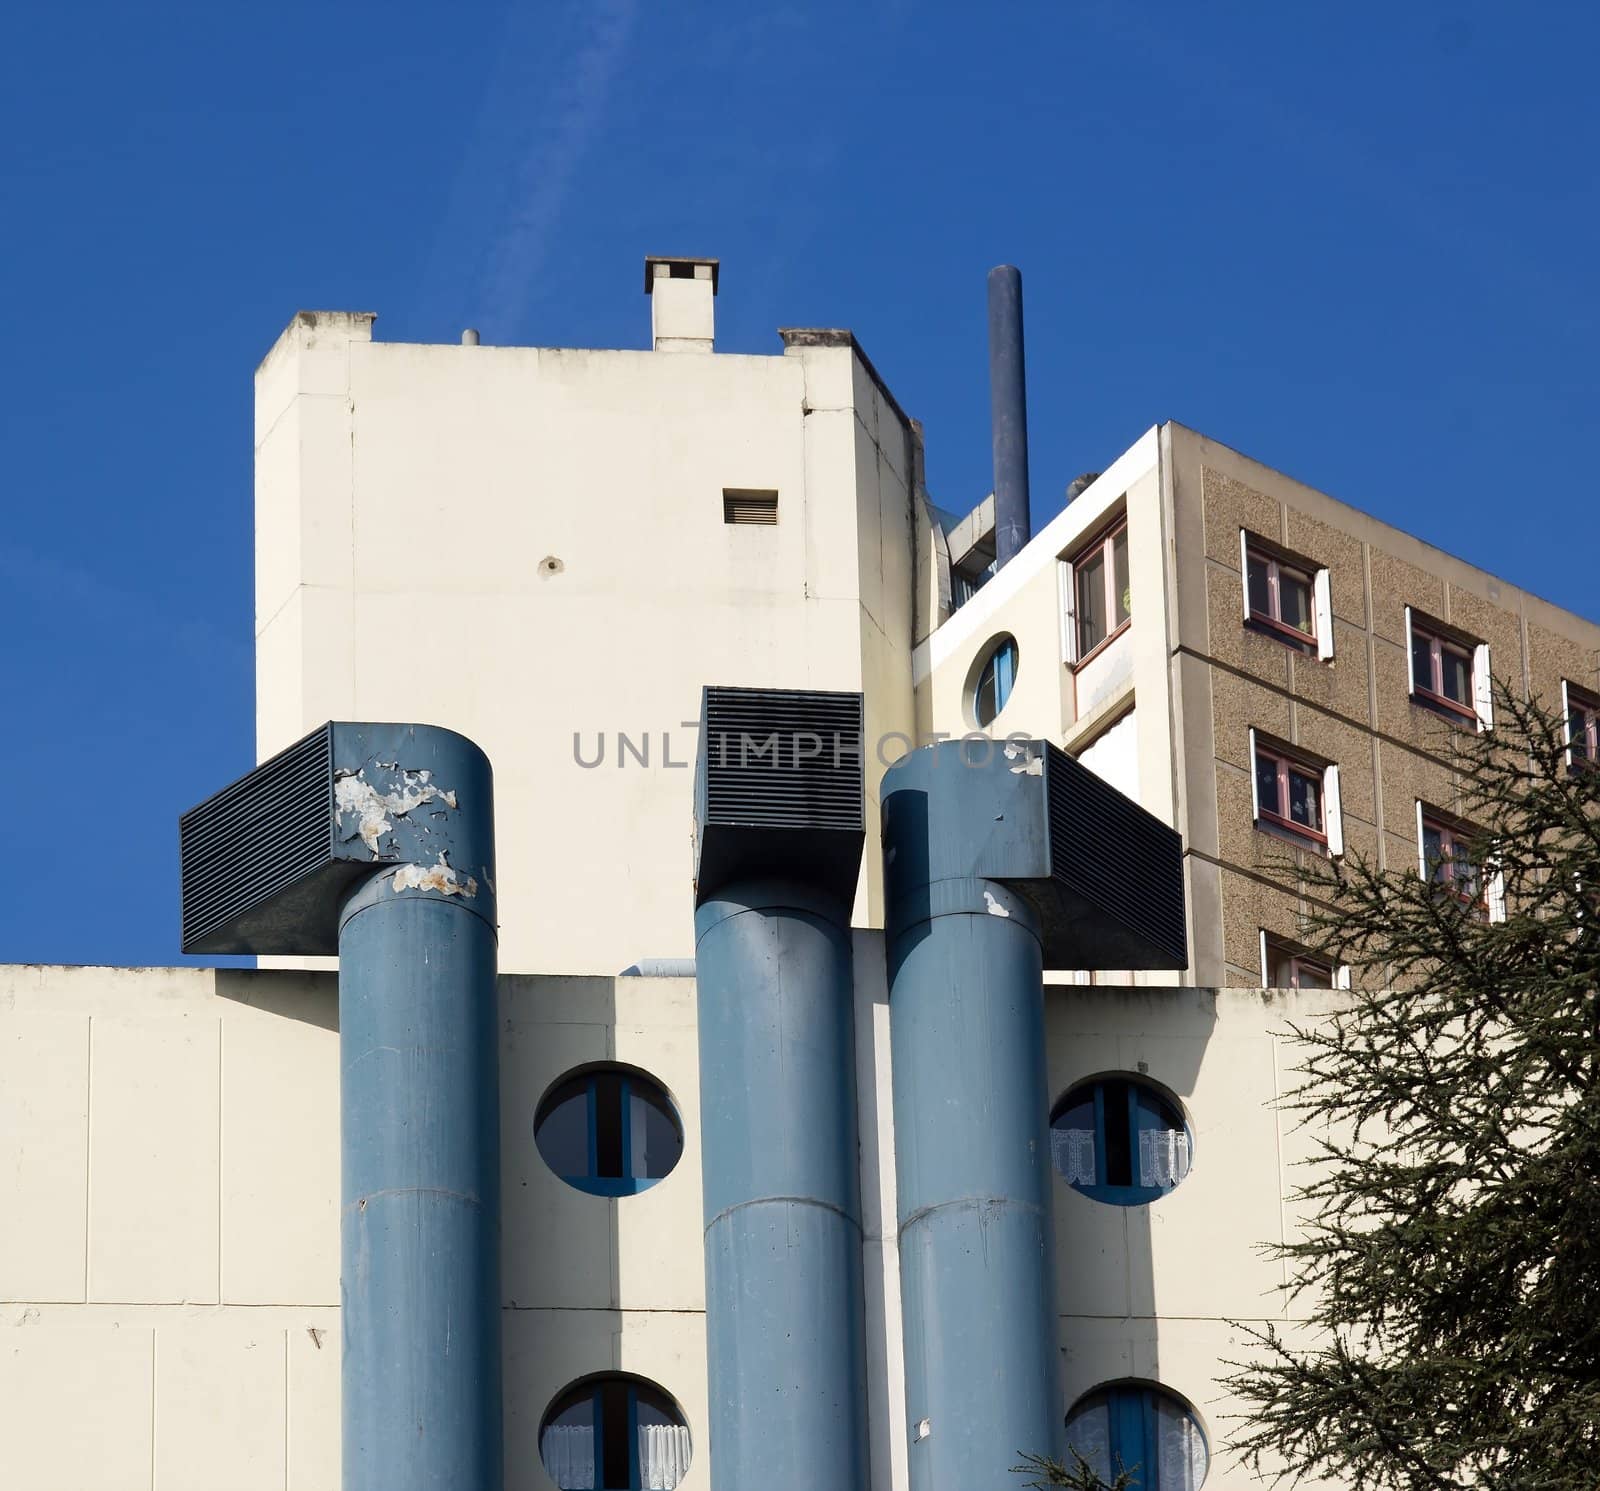 large ventilation shafts in external building